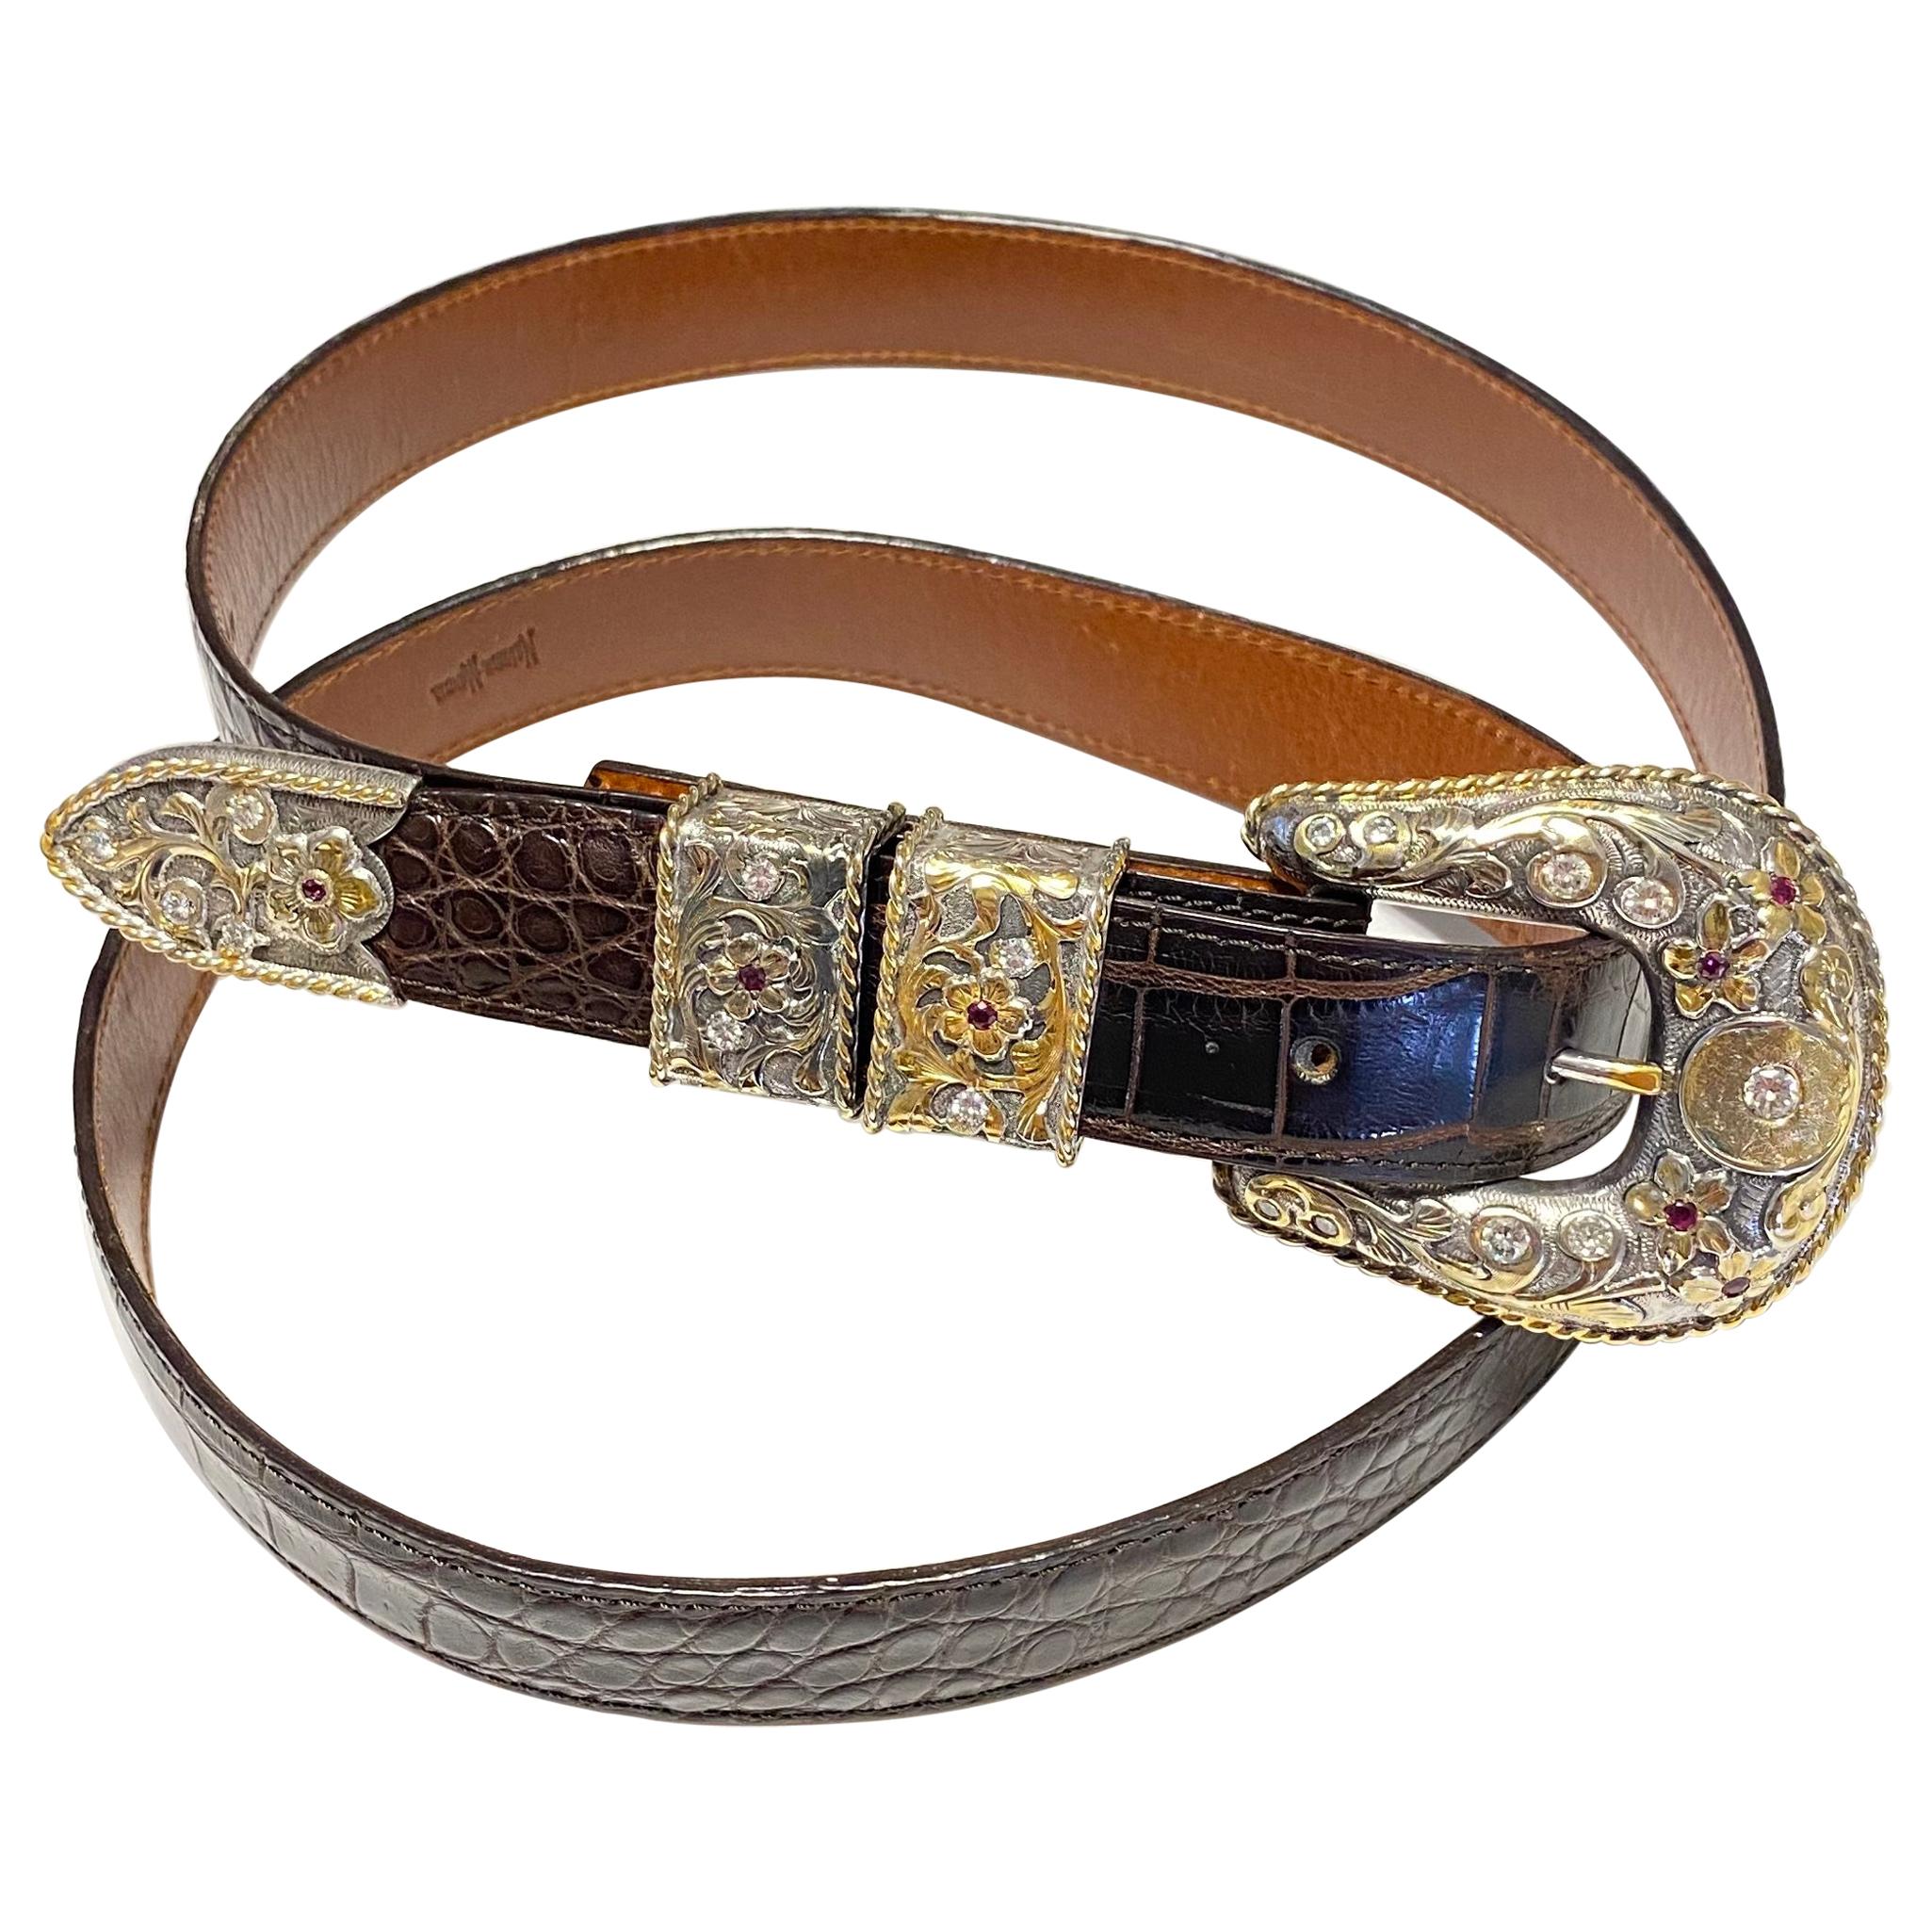 Vintage Belt Buckle|Flower Shape|Unusual Handcrafted Belt Buckle|Pewter Look